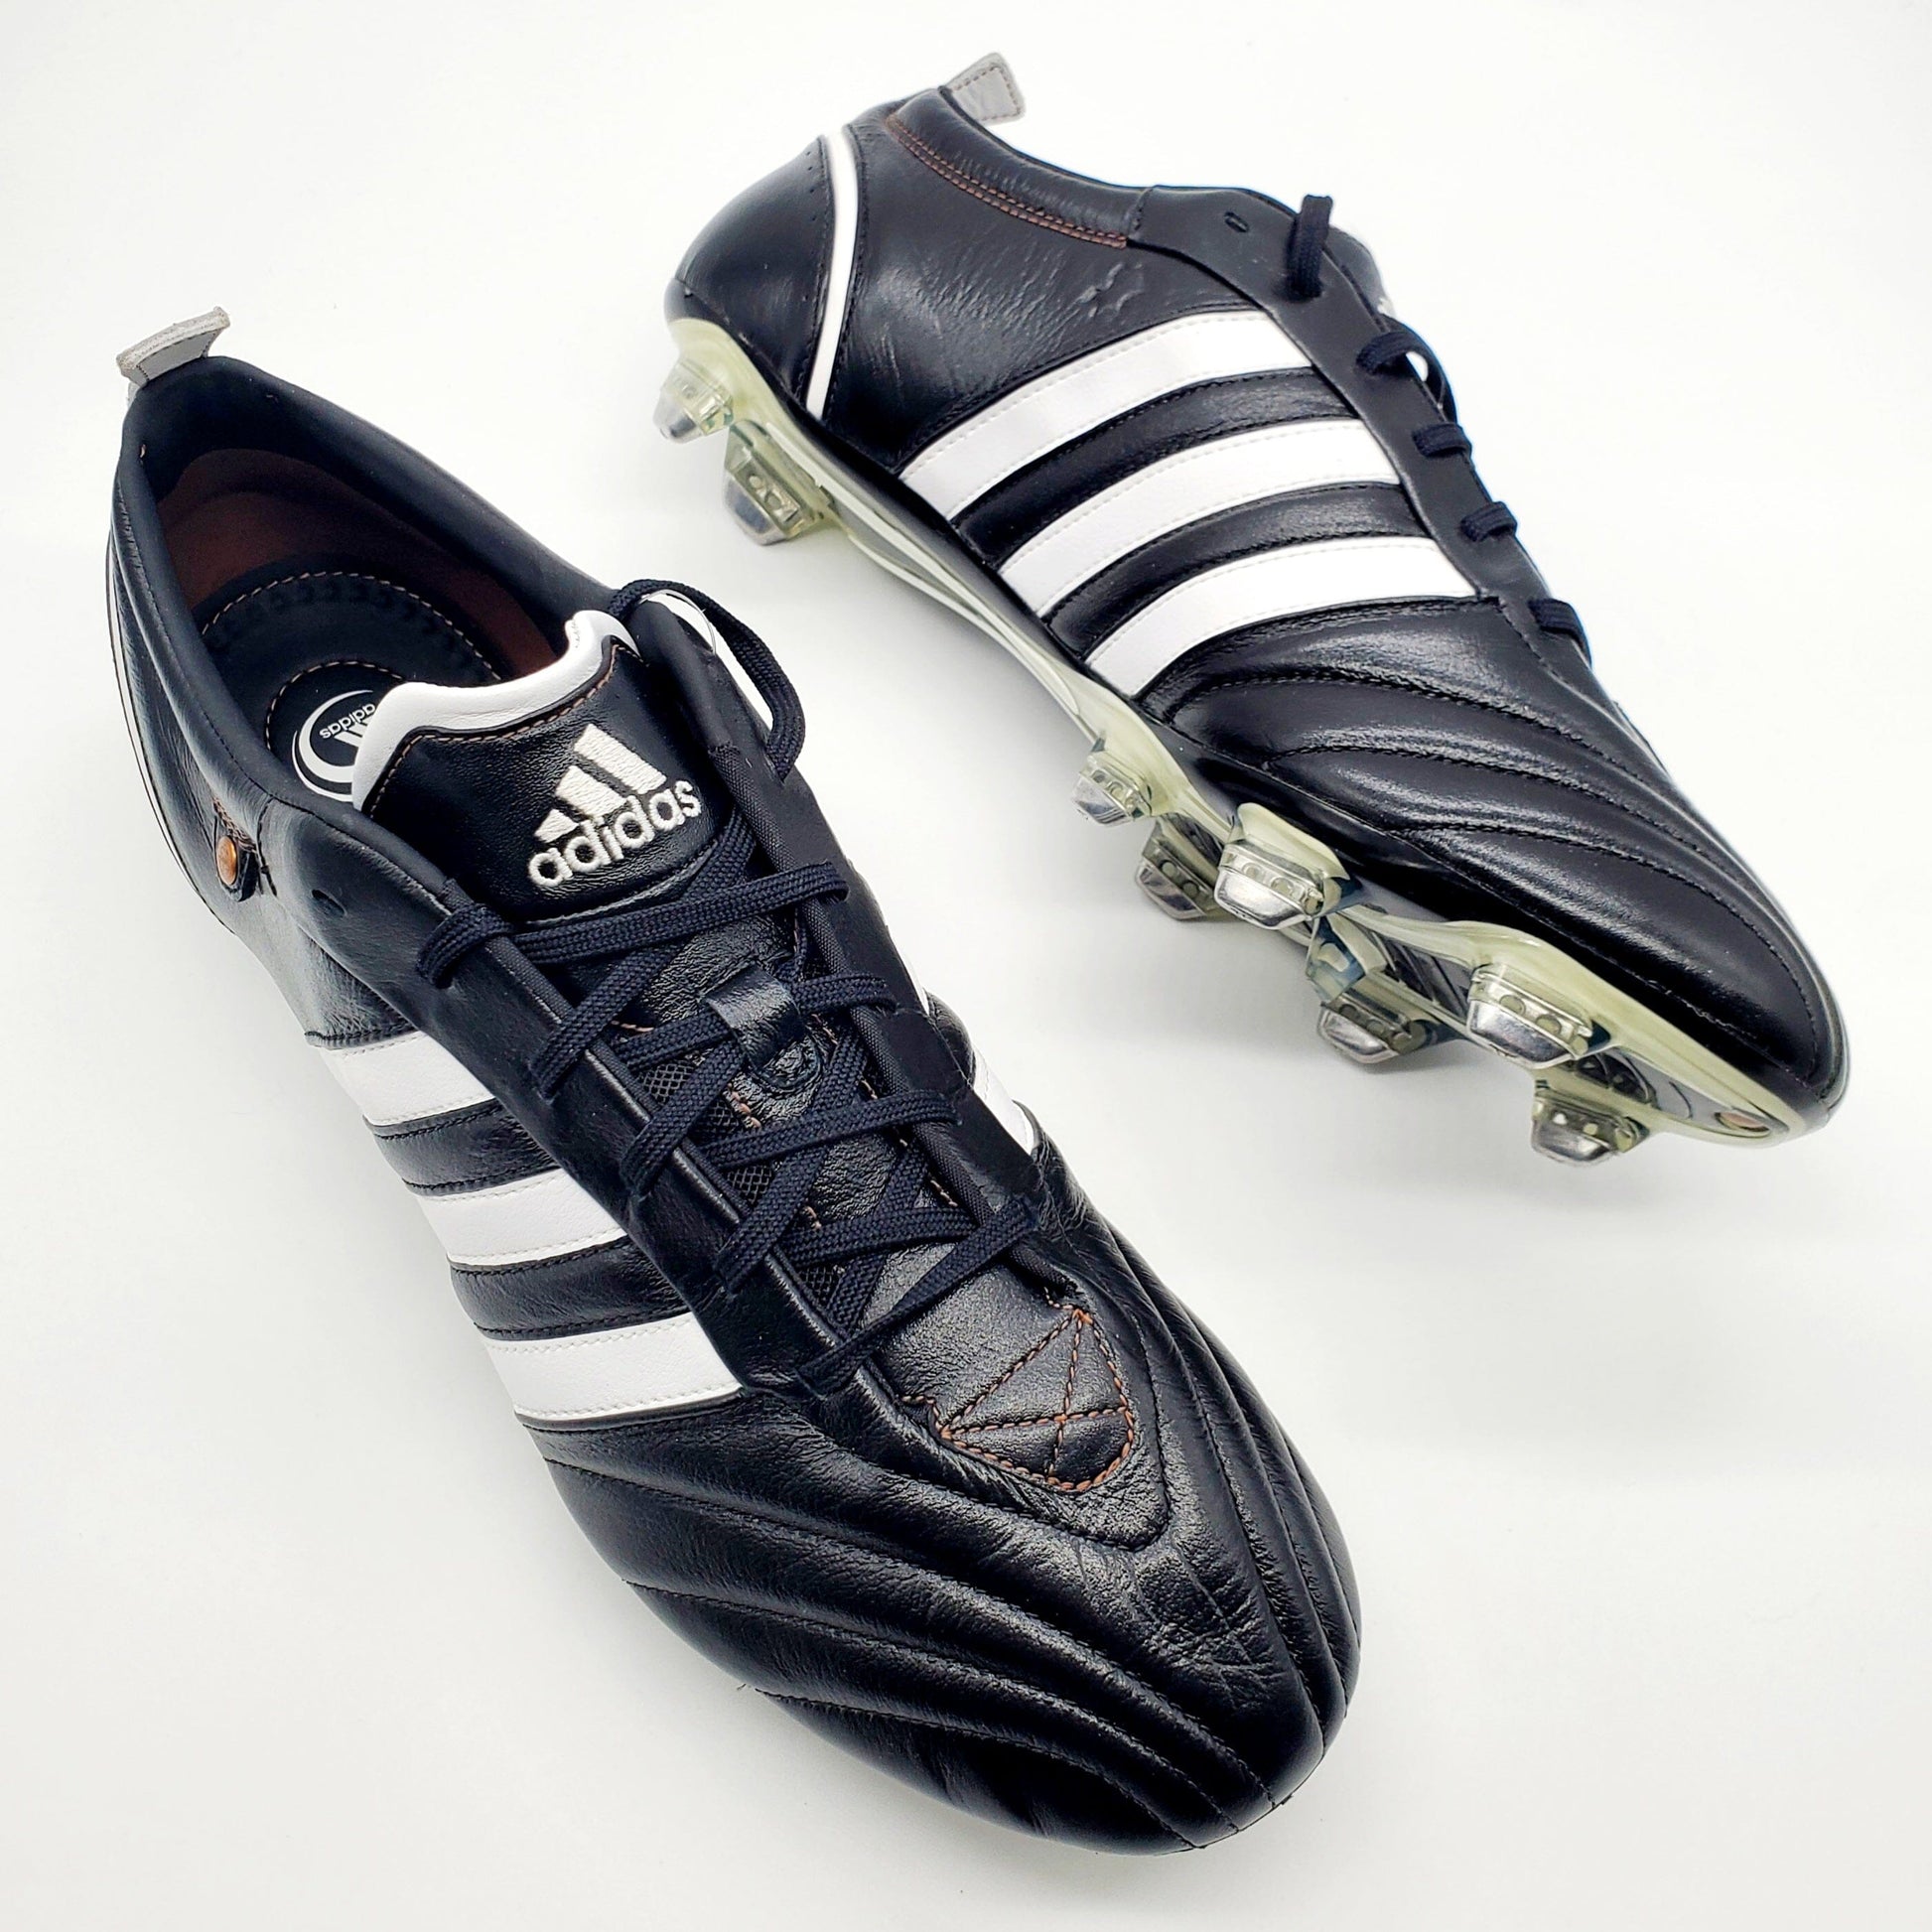 Buy Adidas Adipure TRX at Football Boots